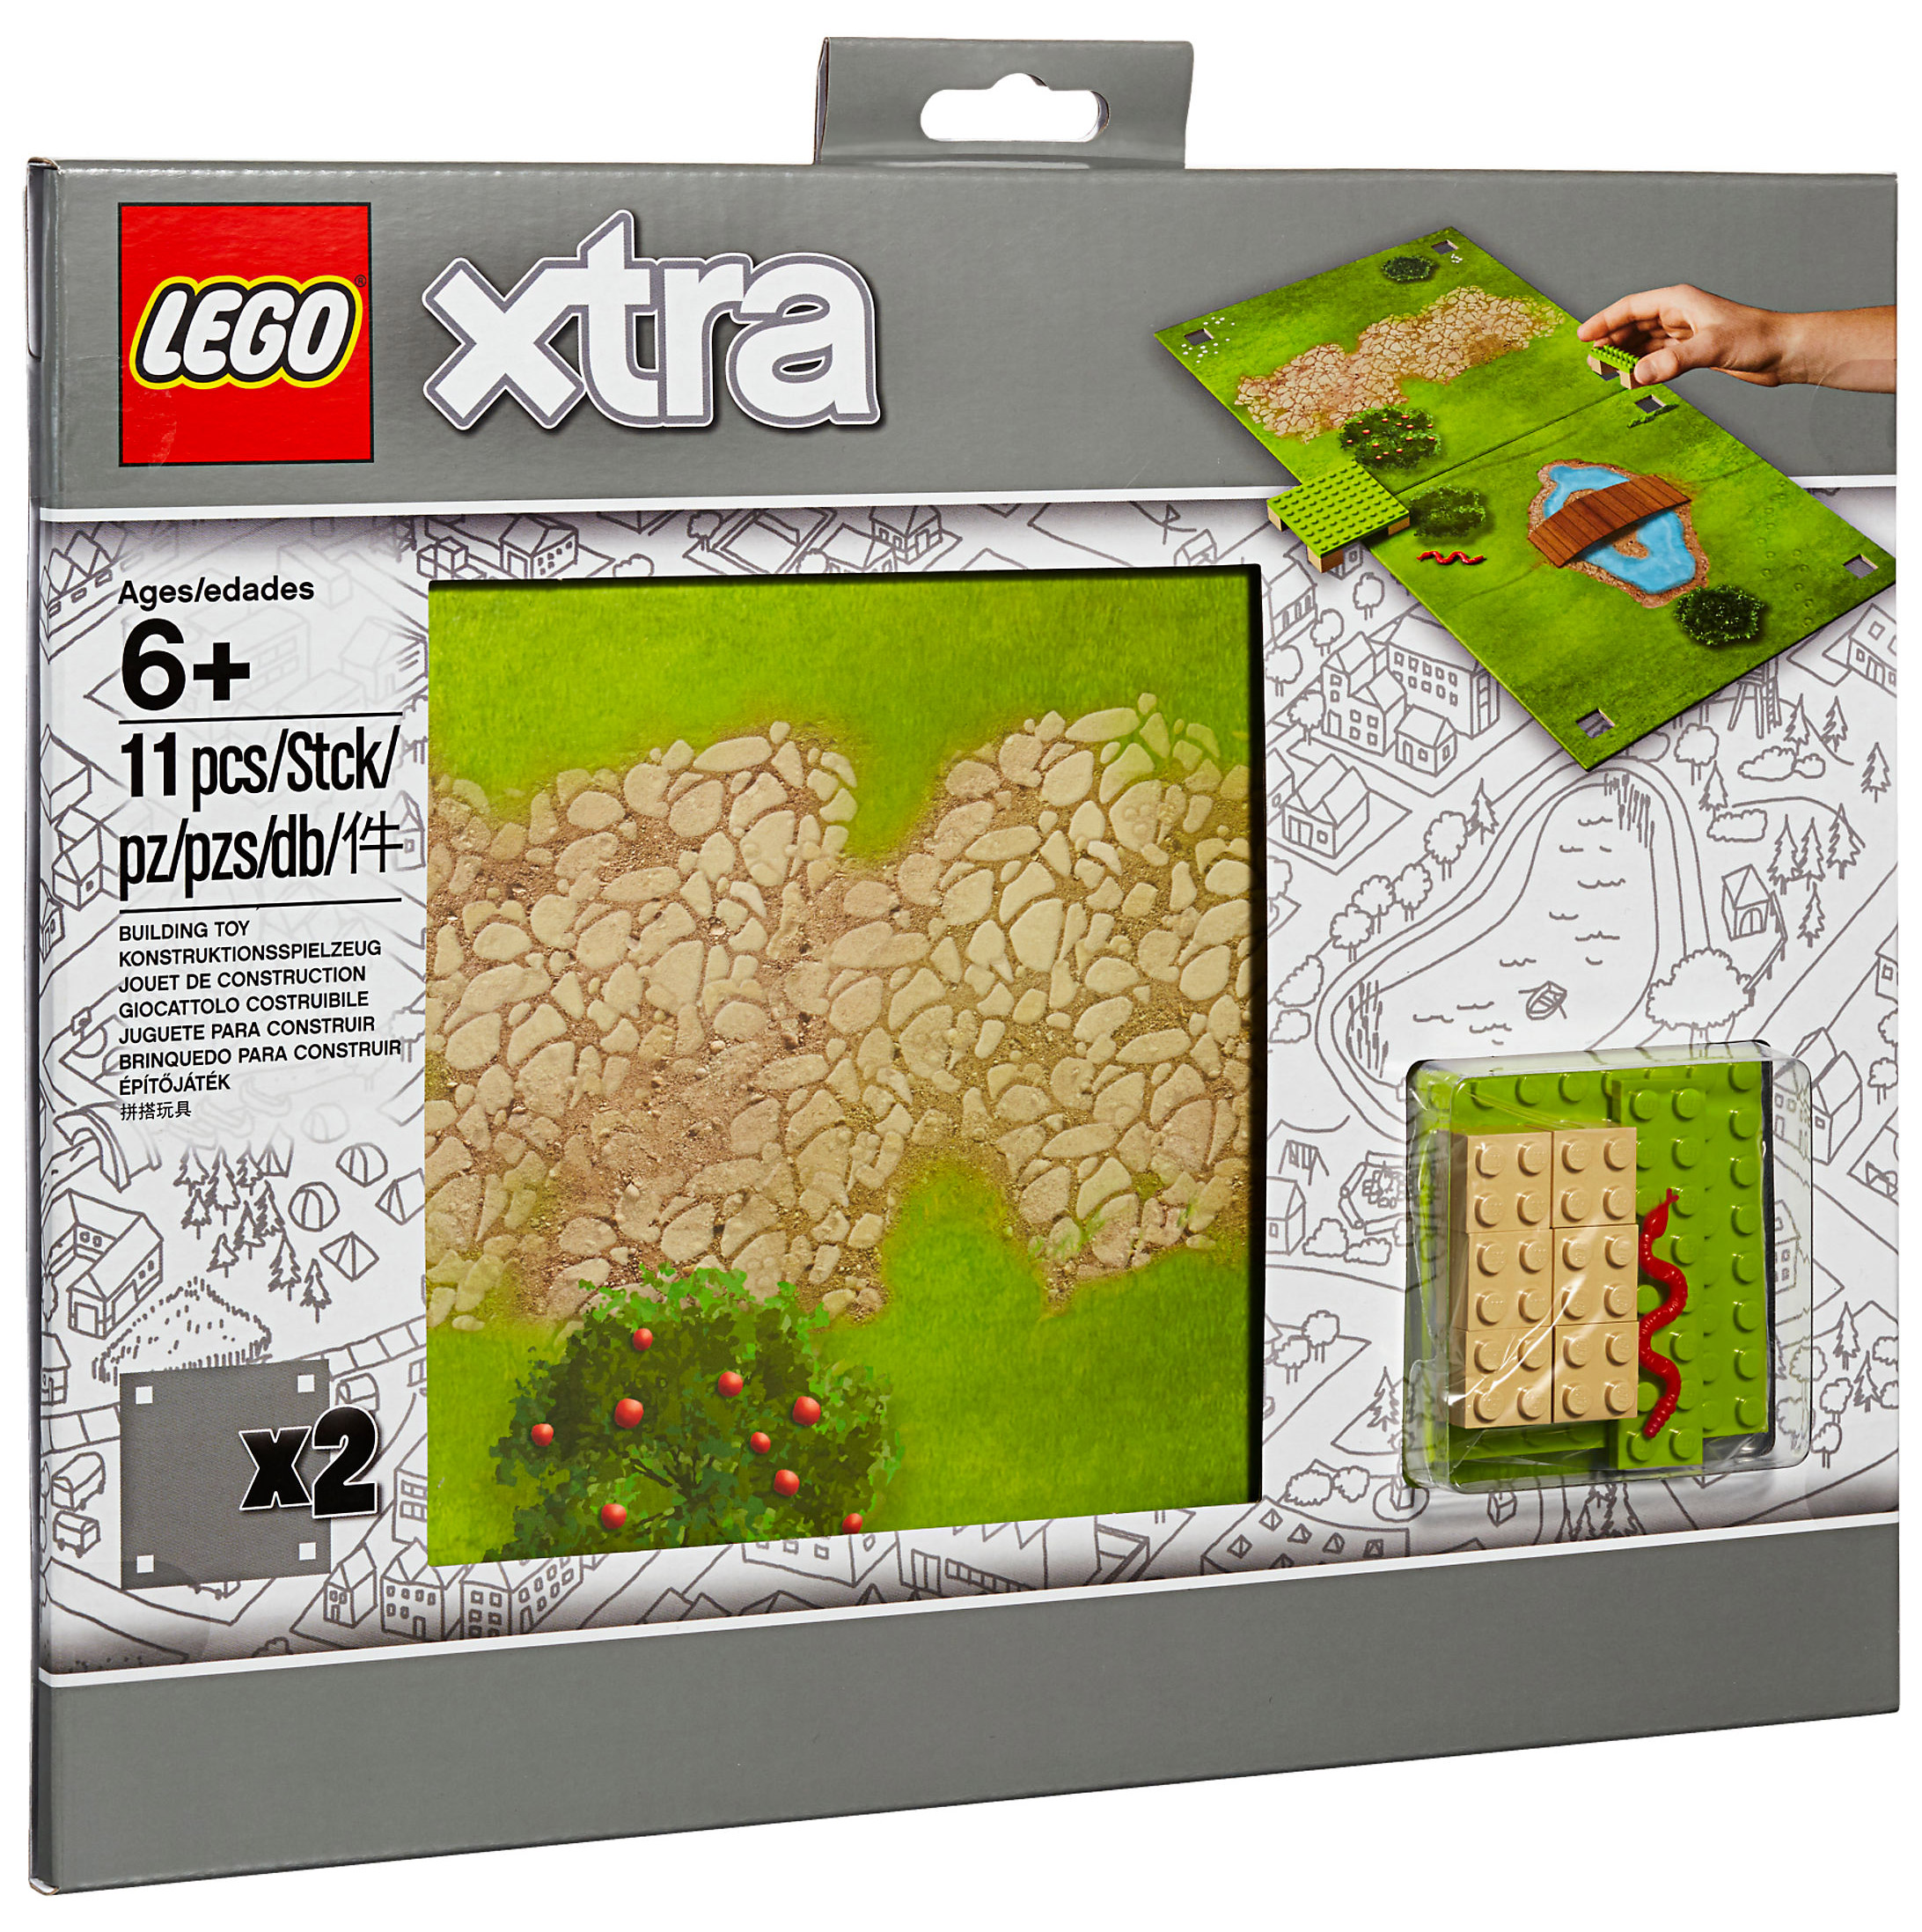 LEGO Objets divers 853842 pas cher, LEGO Xtra - Tapis de jeu Le parc